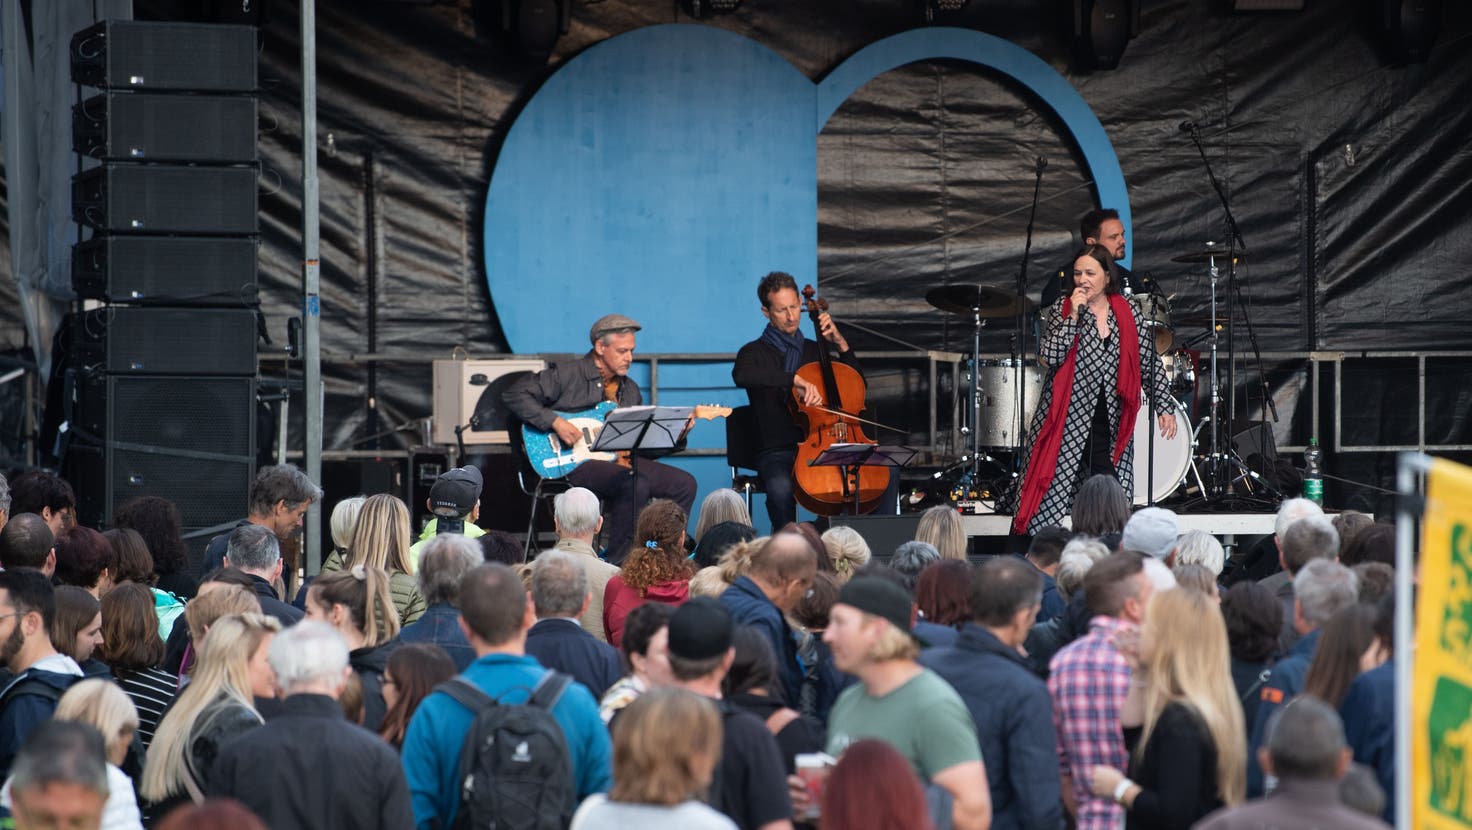 Vera Kaa läutete mit ihrem Konzert auf dem Theaterplatz das Luzerner Stadtfest ein. (Bild: Boris Bürgisser (luzern, 24. Juni 2022))